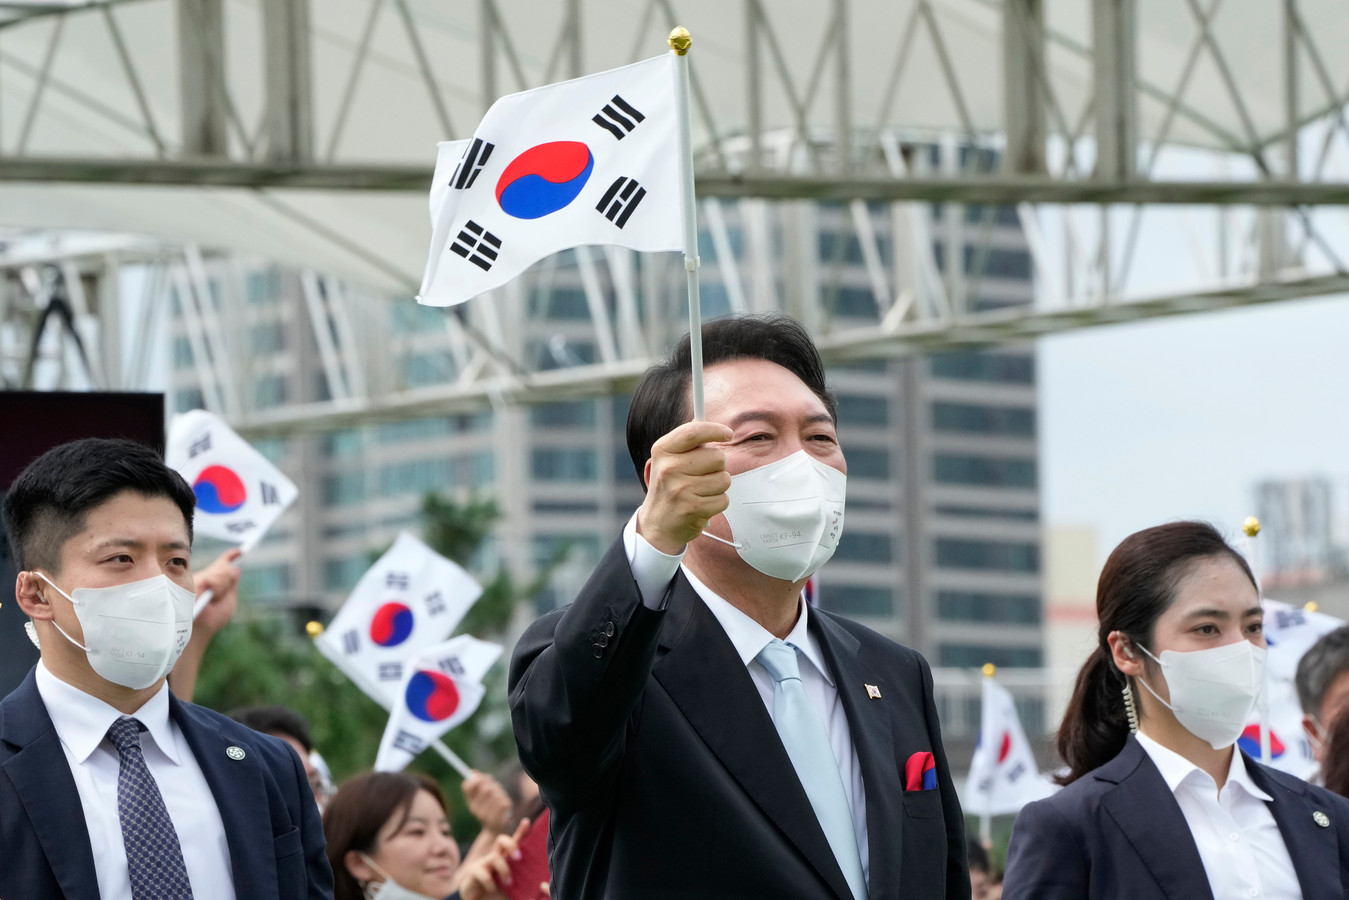 De Zuid-Koreaanse president Yoon Suk-yeol zwaait met de nationale vlag tijdens tijdens een ceremonie in Seoul waarbij de Koreaanse bevrijding van Japan in 1945 werd gevierd.